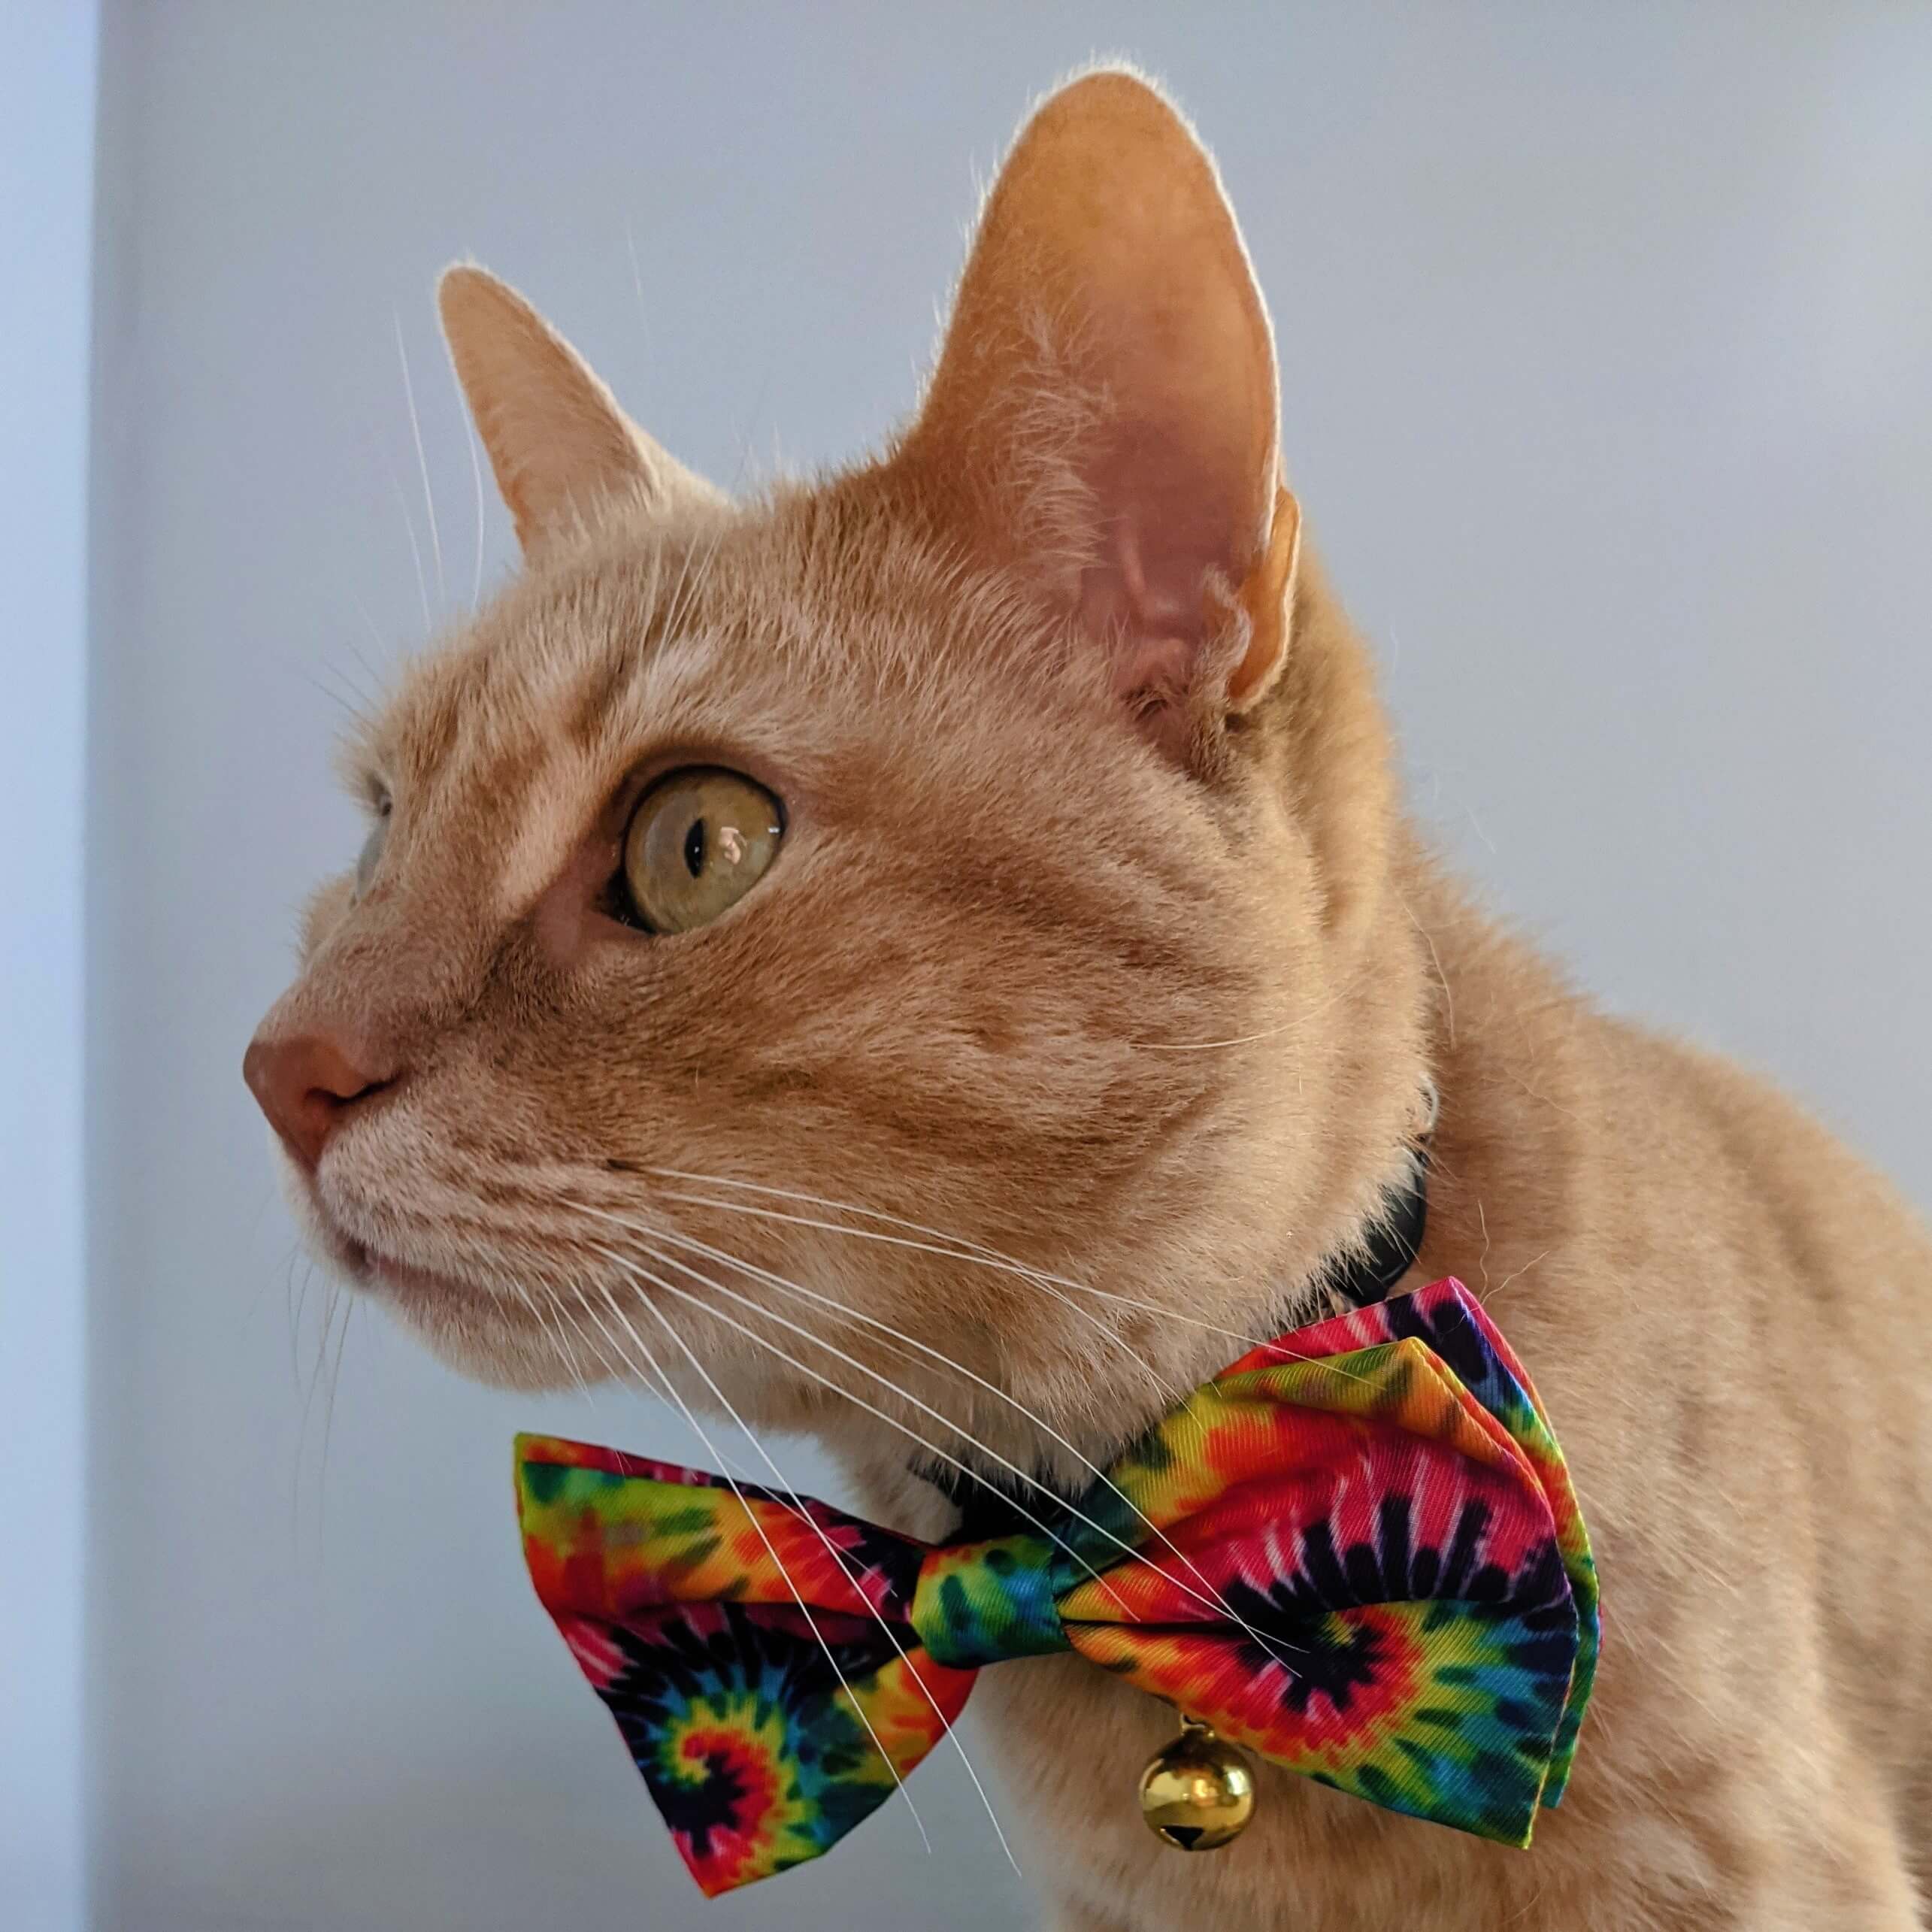 cat wearing huxley & kent woodstock bow tie